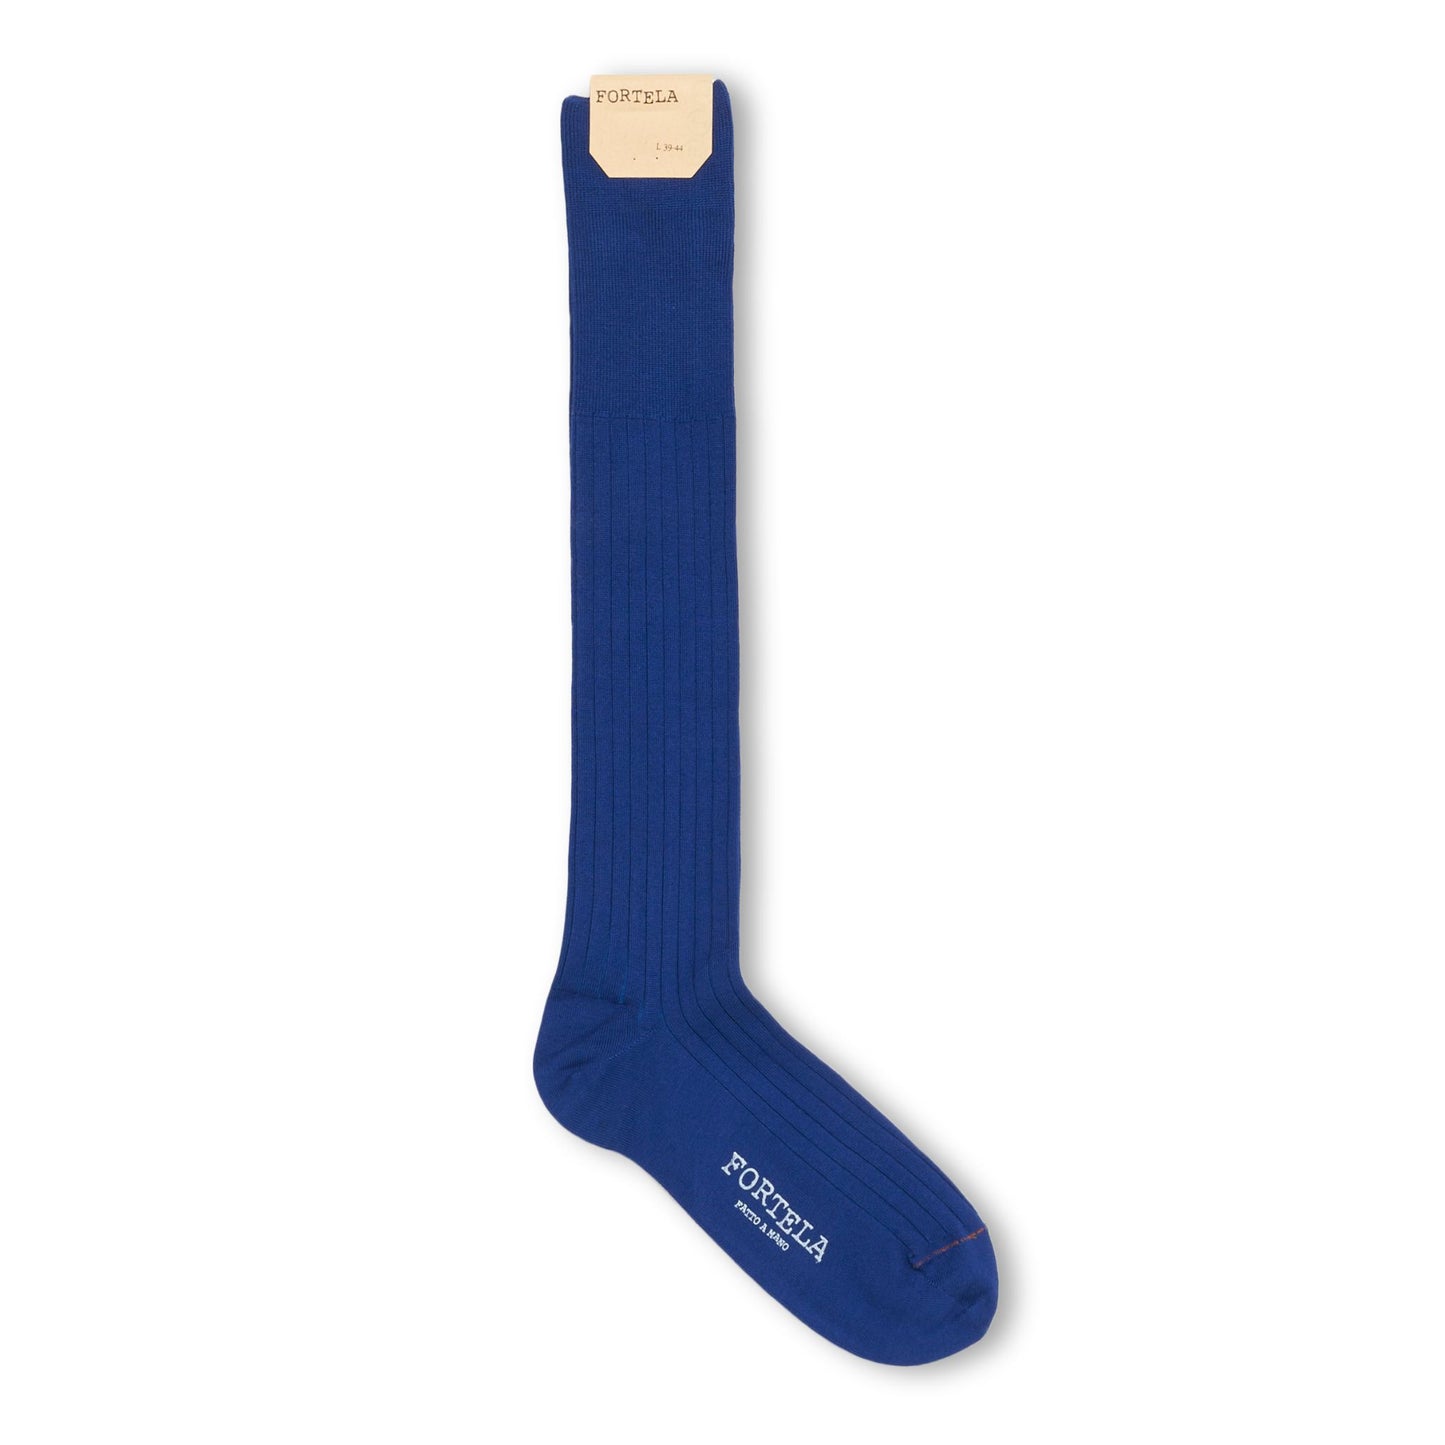 FORTELA - Socks Royal Blue